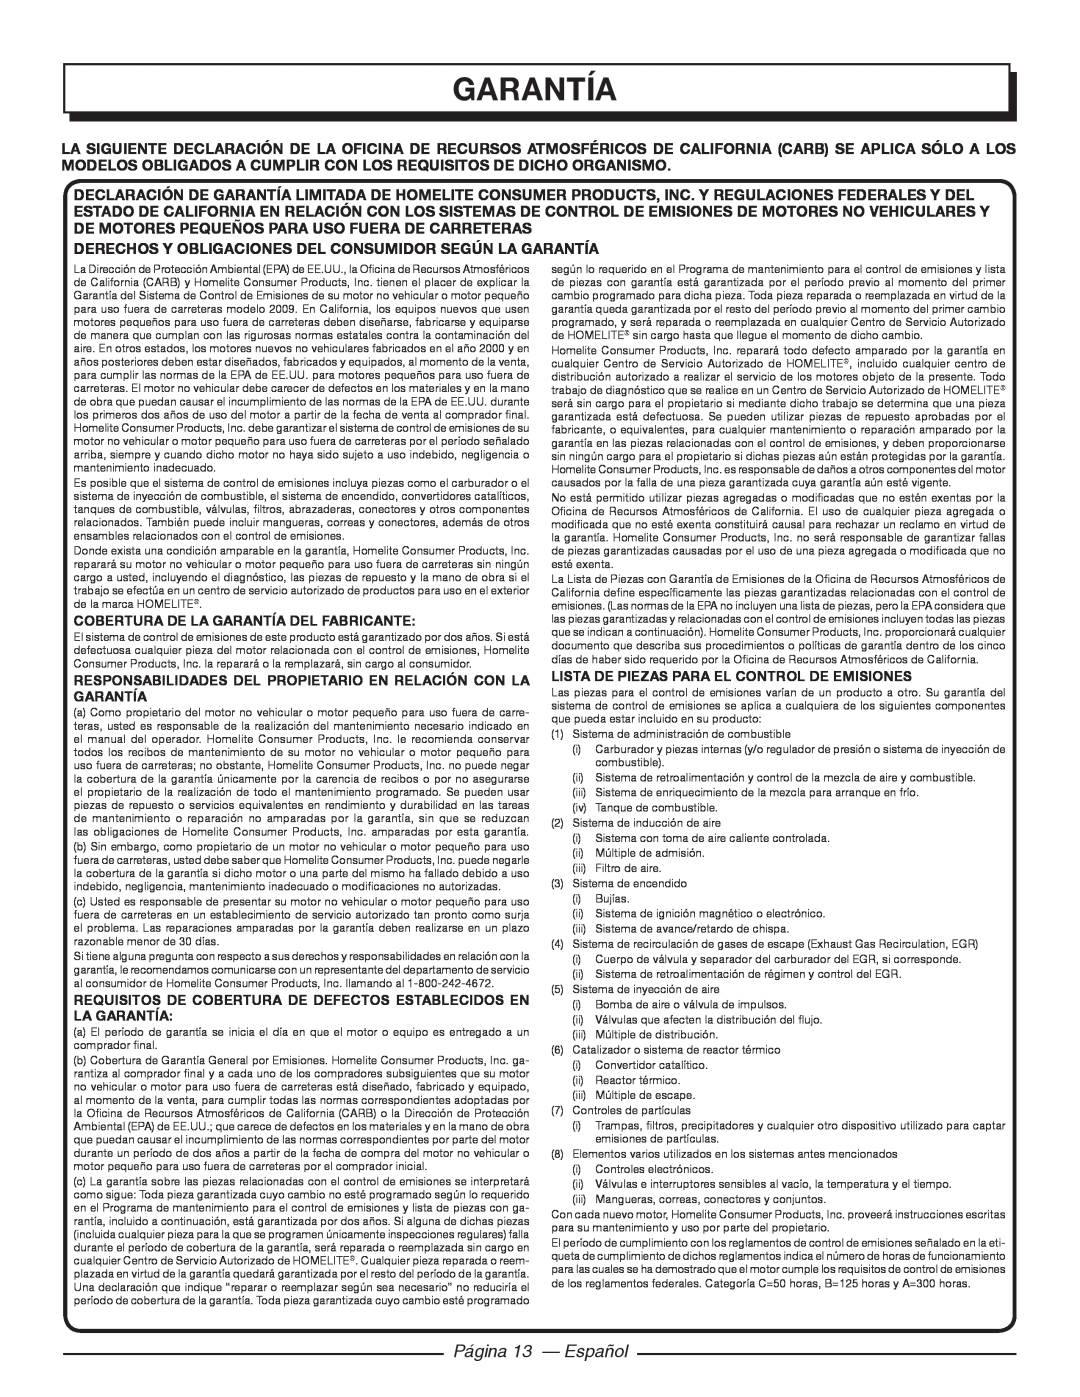 Homelite 26CS UT22600 garantía, Página 13 - Español, Derechos Y Obligaciones Del Consumidor Según La Garantía 